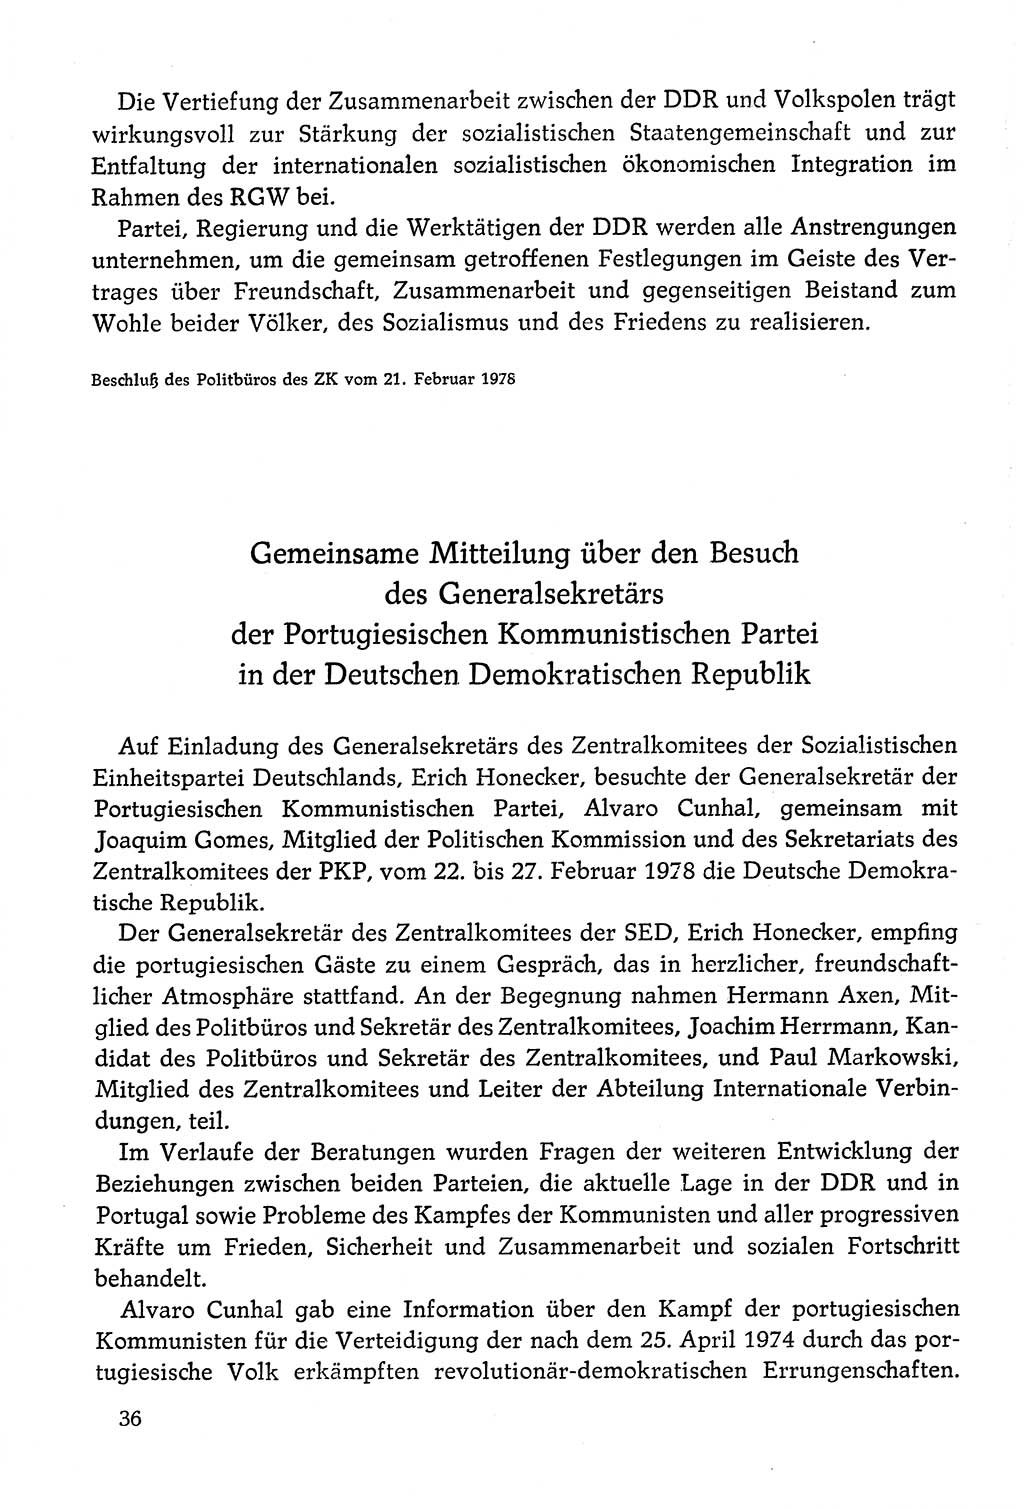 Dokumente der Sozialistischen Einheitspartei Deutschlands (SED) [Deutsche Demokratische Republik (DDR)] 1978-1979, Seite 36 (Dok. SED DDR 1978-1979, S. 36)